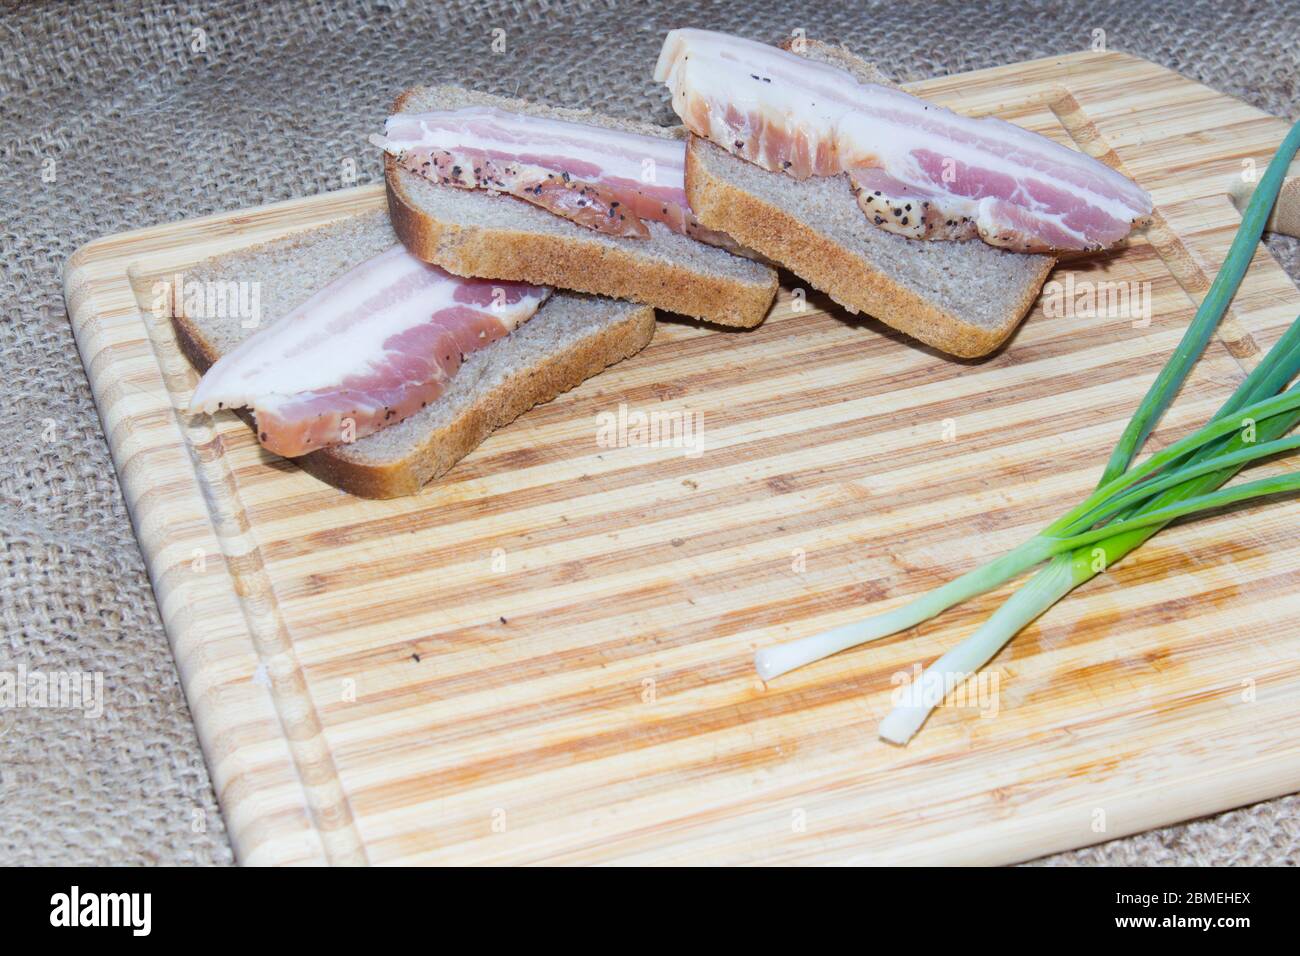 Bacon fumé, pain, oignon vert sur une planche à découper en bois Banque D'Images